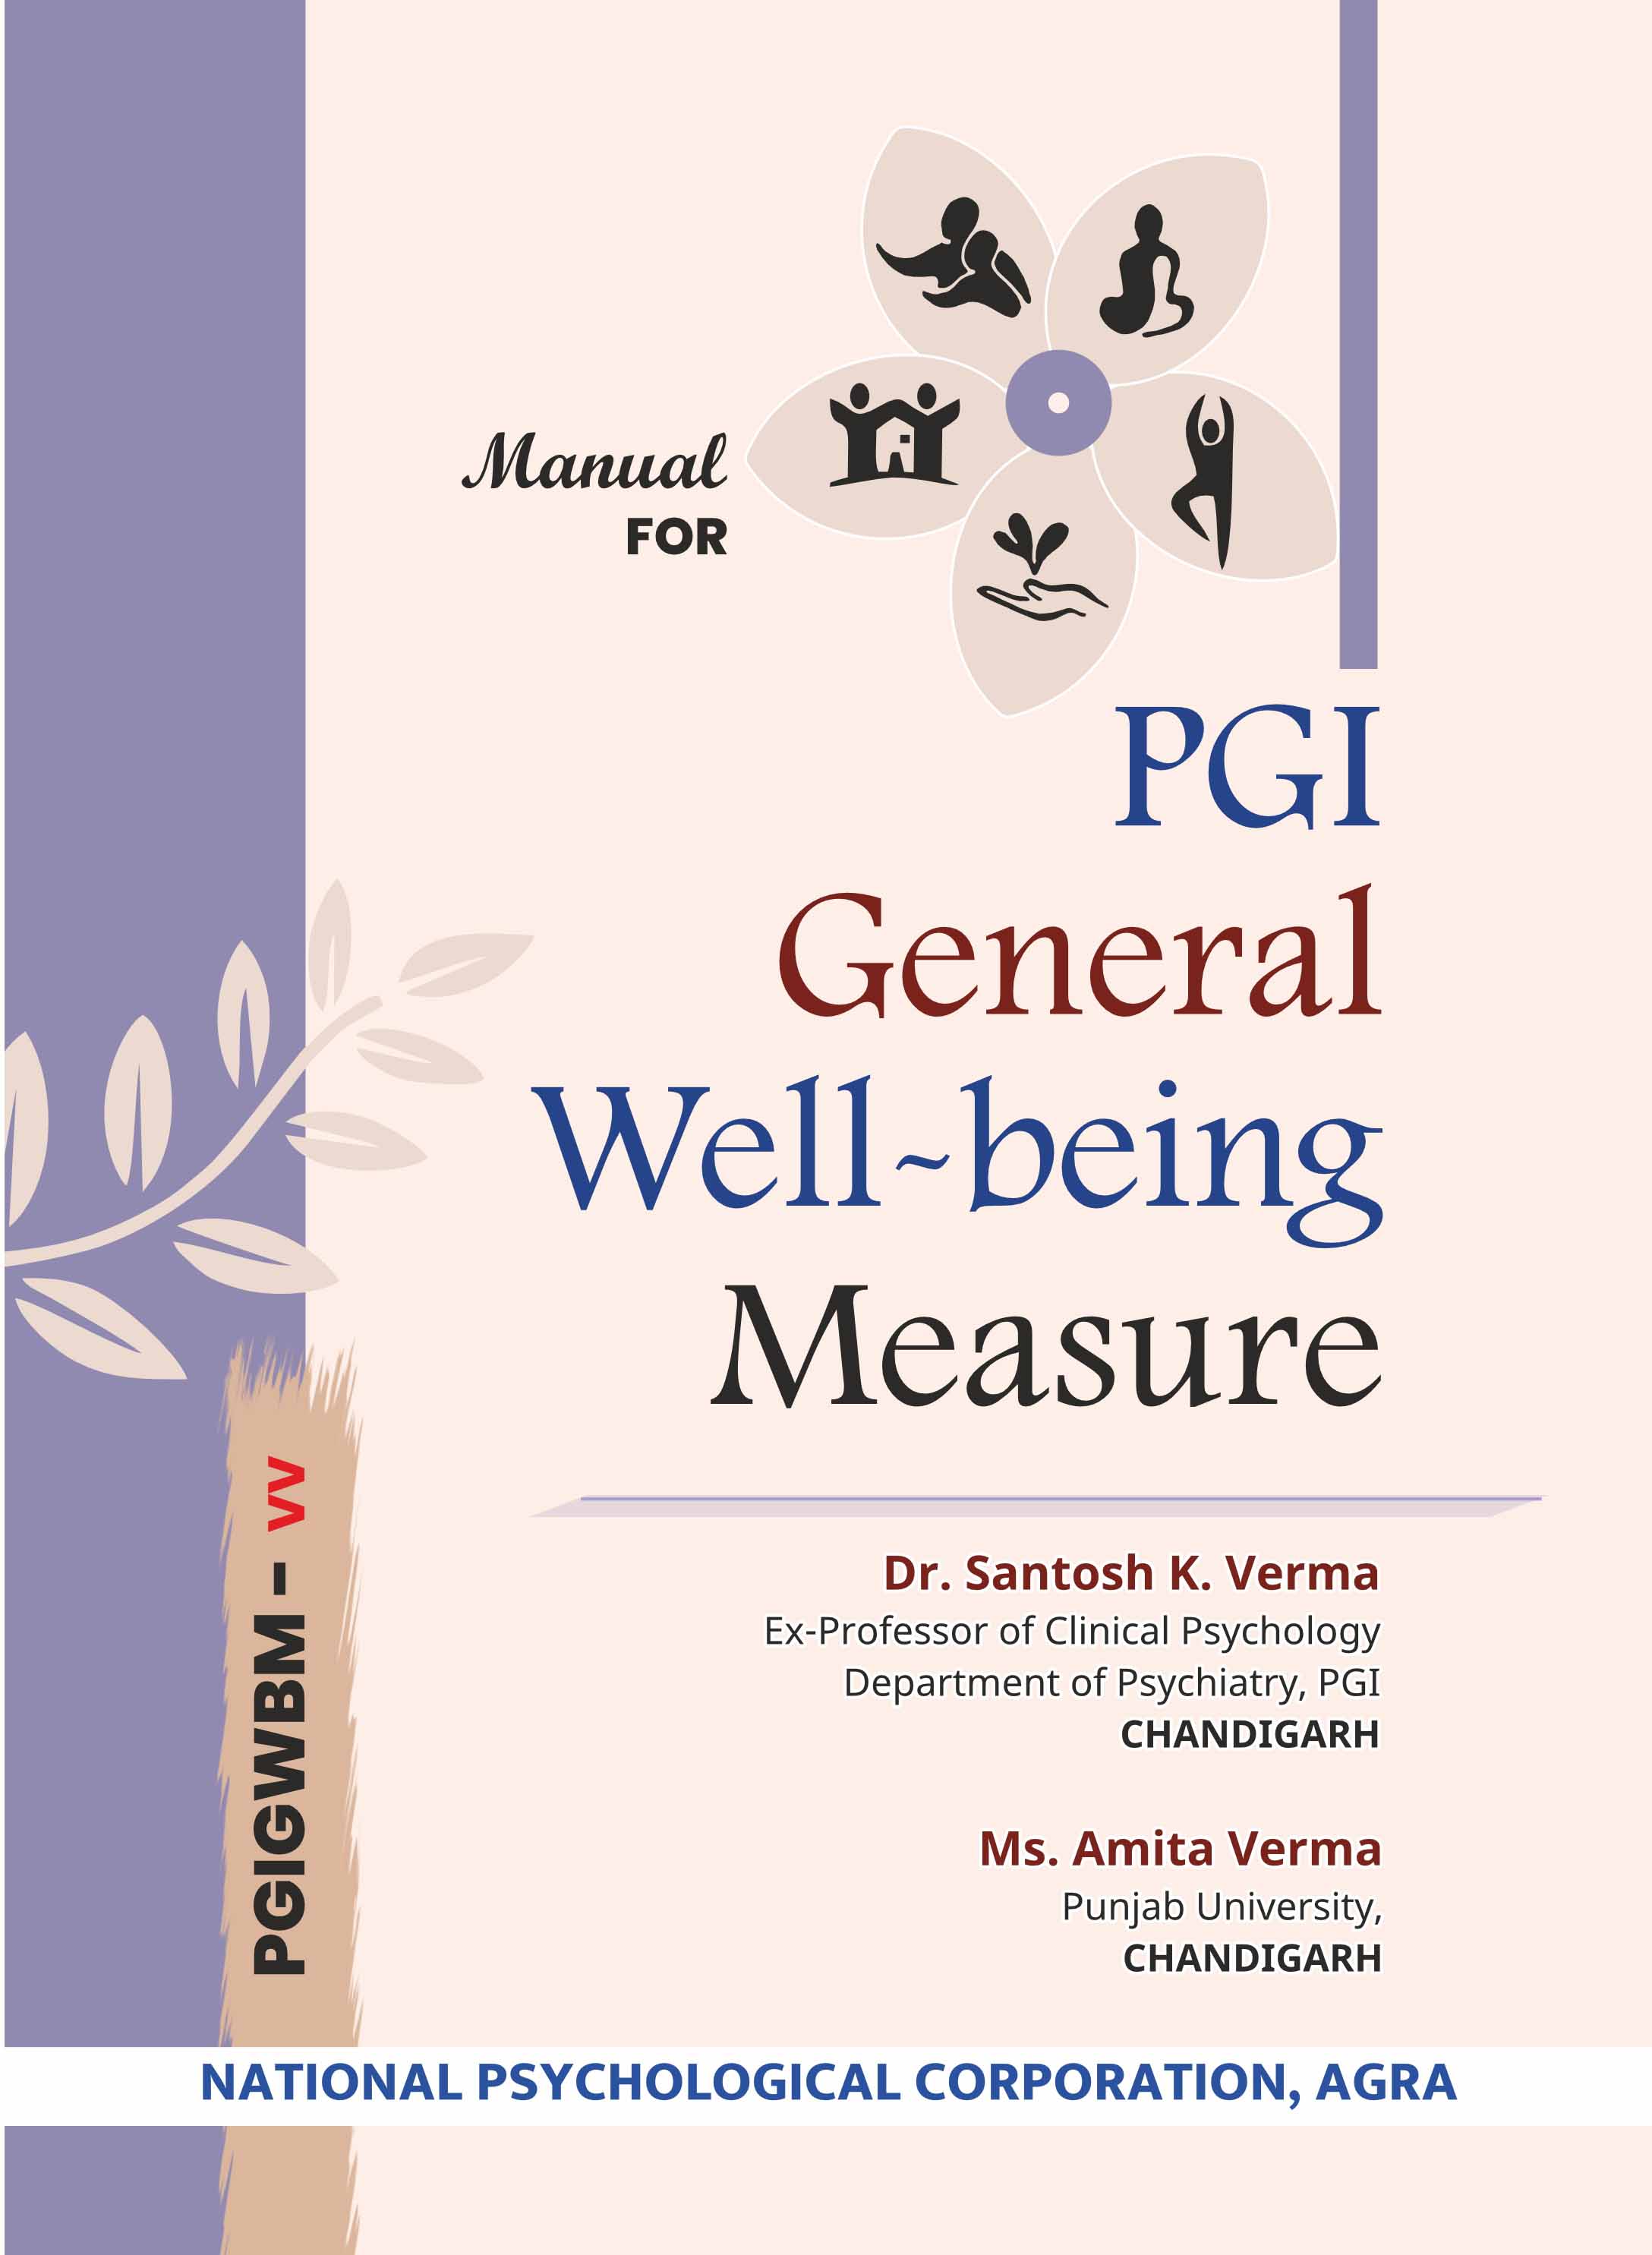 PGI-General-Well-being-Measure